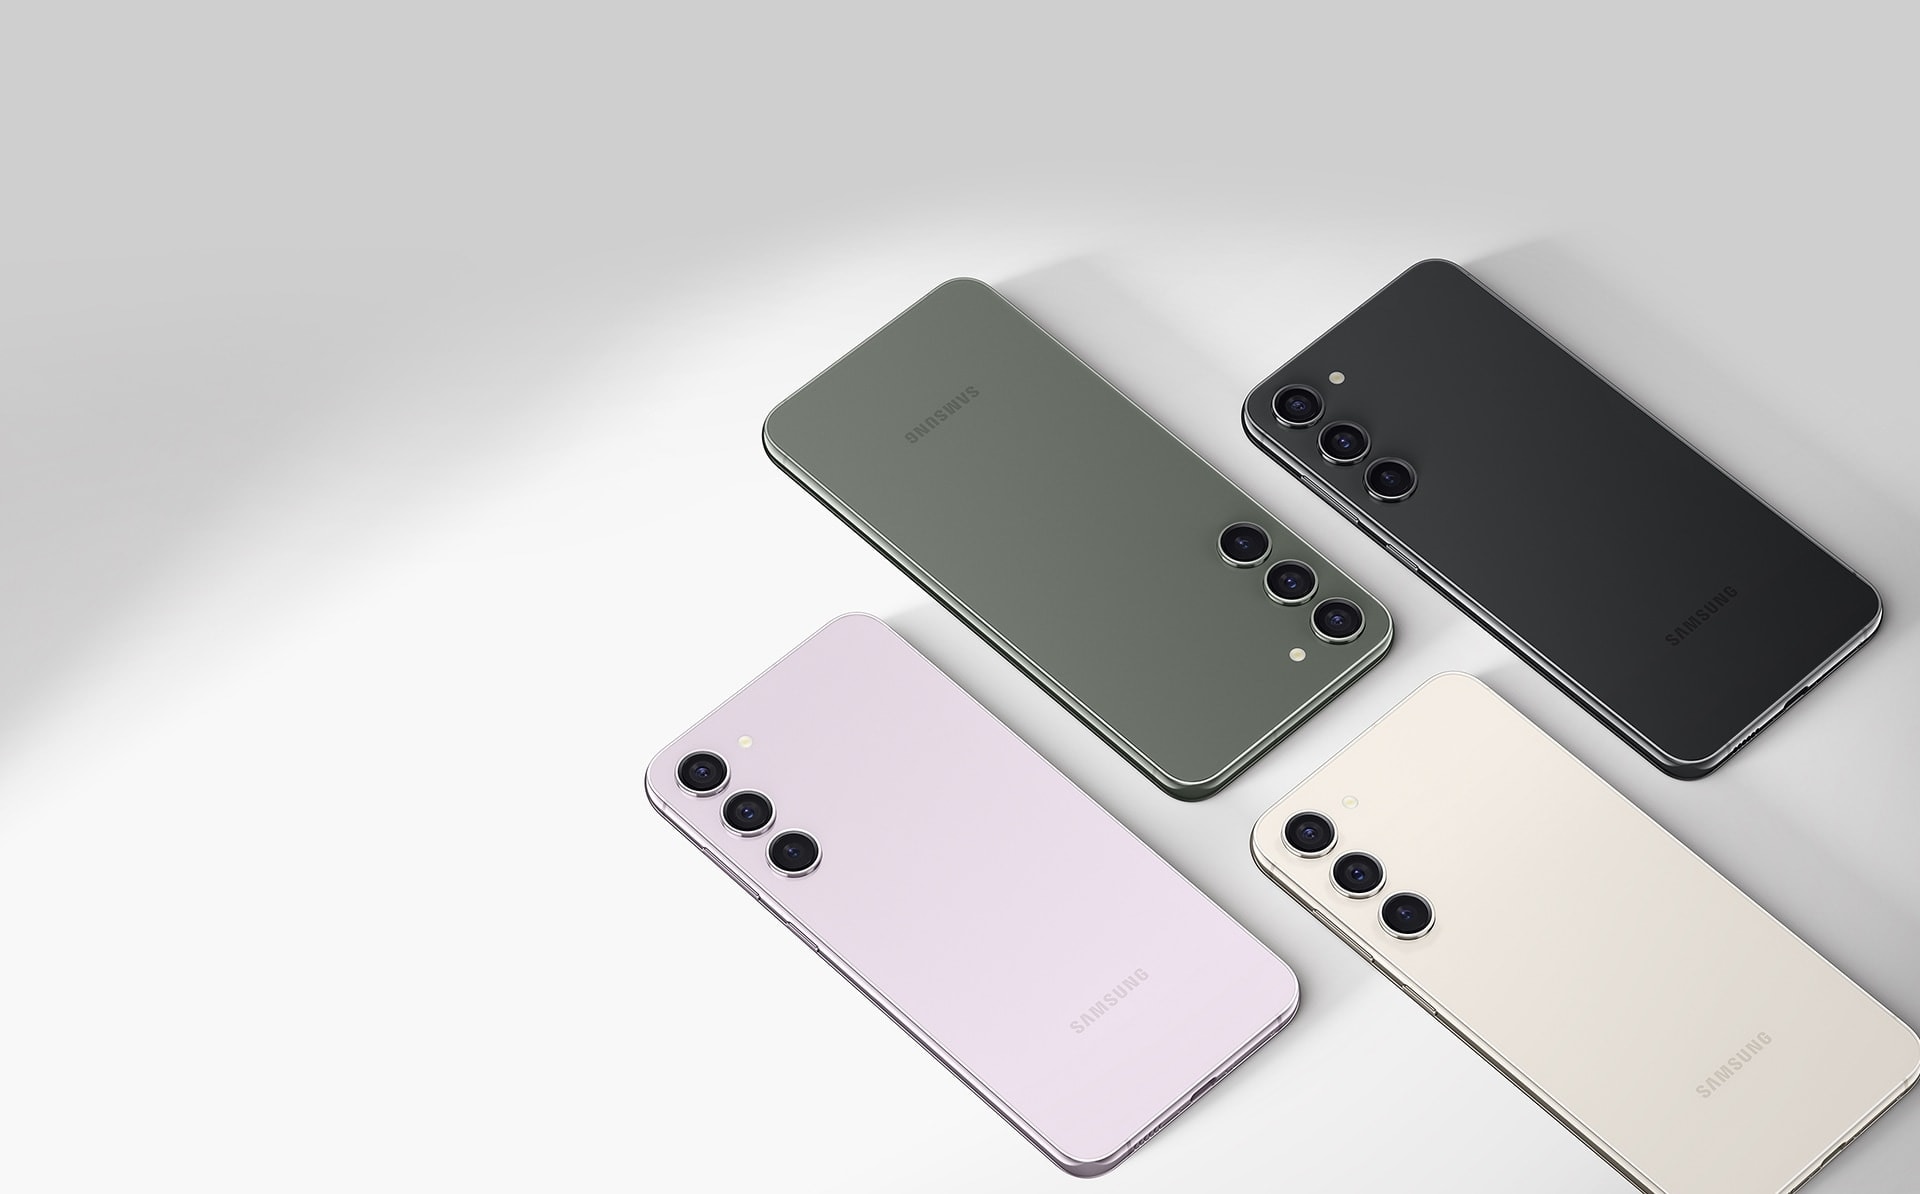 Плоский набор из четырех телефонов Galaxy S23 plus. Каждый из них разного цвета: лавандовый, зеленый, бежевый и черный фантом.